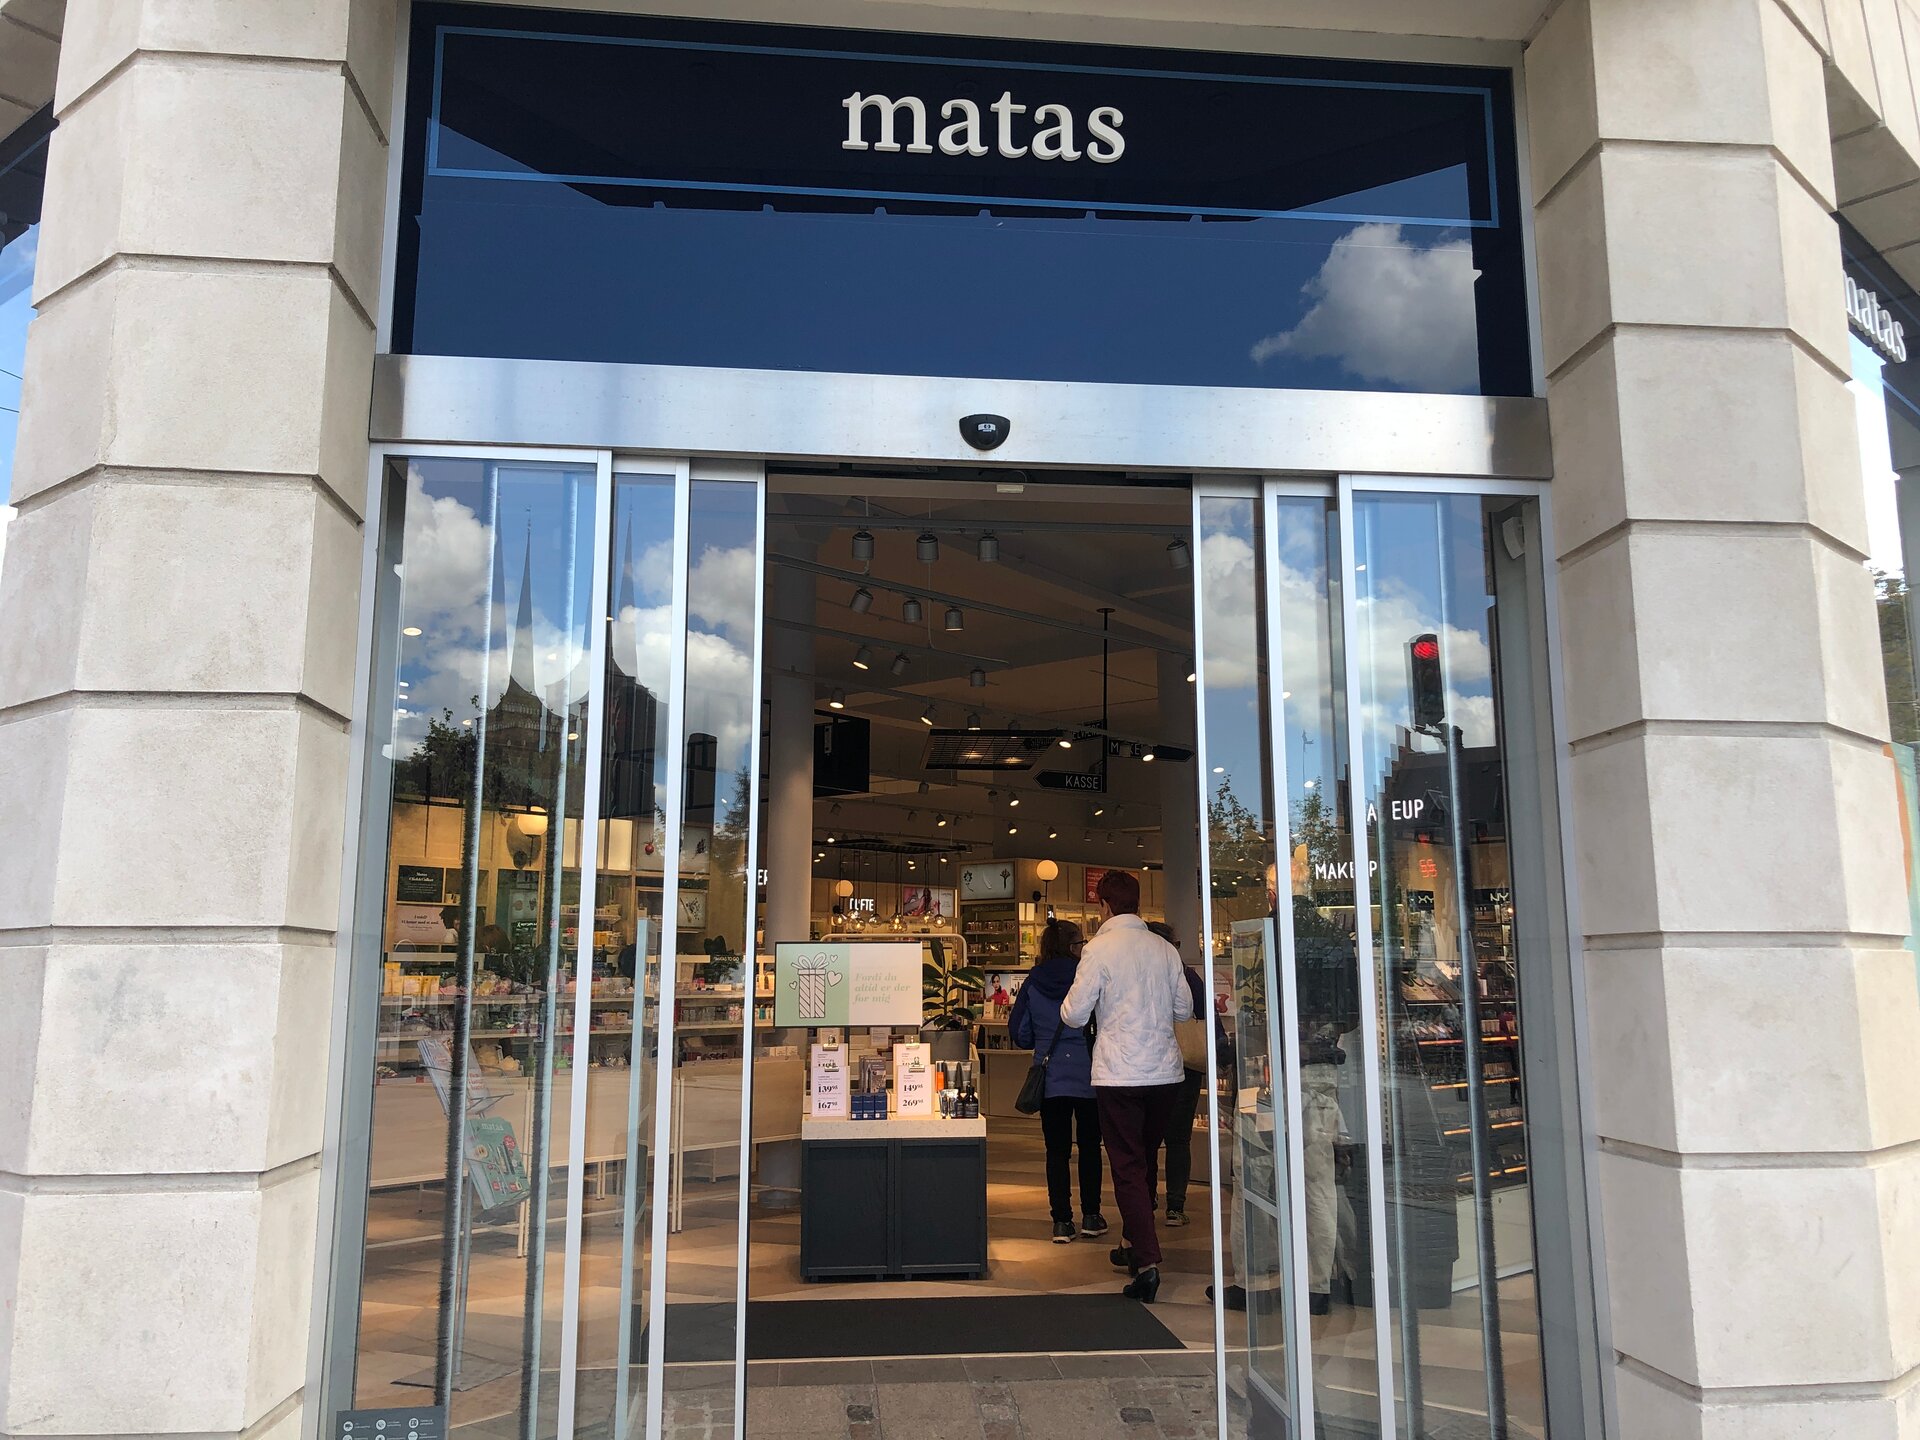 Matas - forbedrer den holistiske shoppingoplevelse med ambitiøs omnichannel strategi